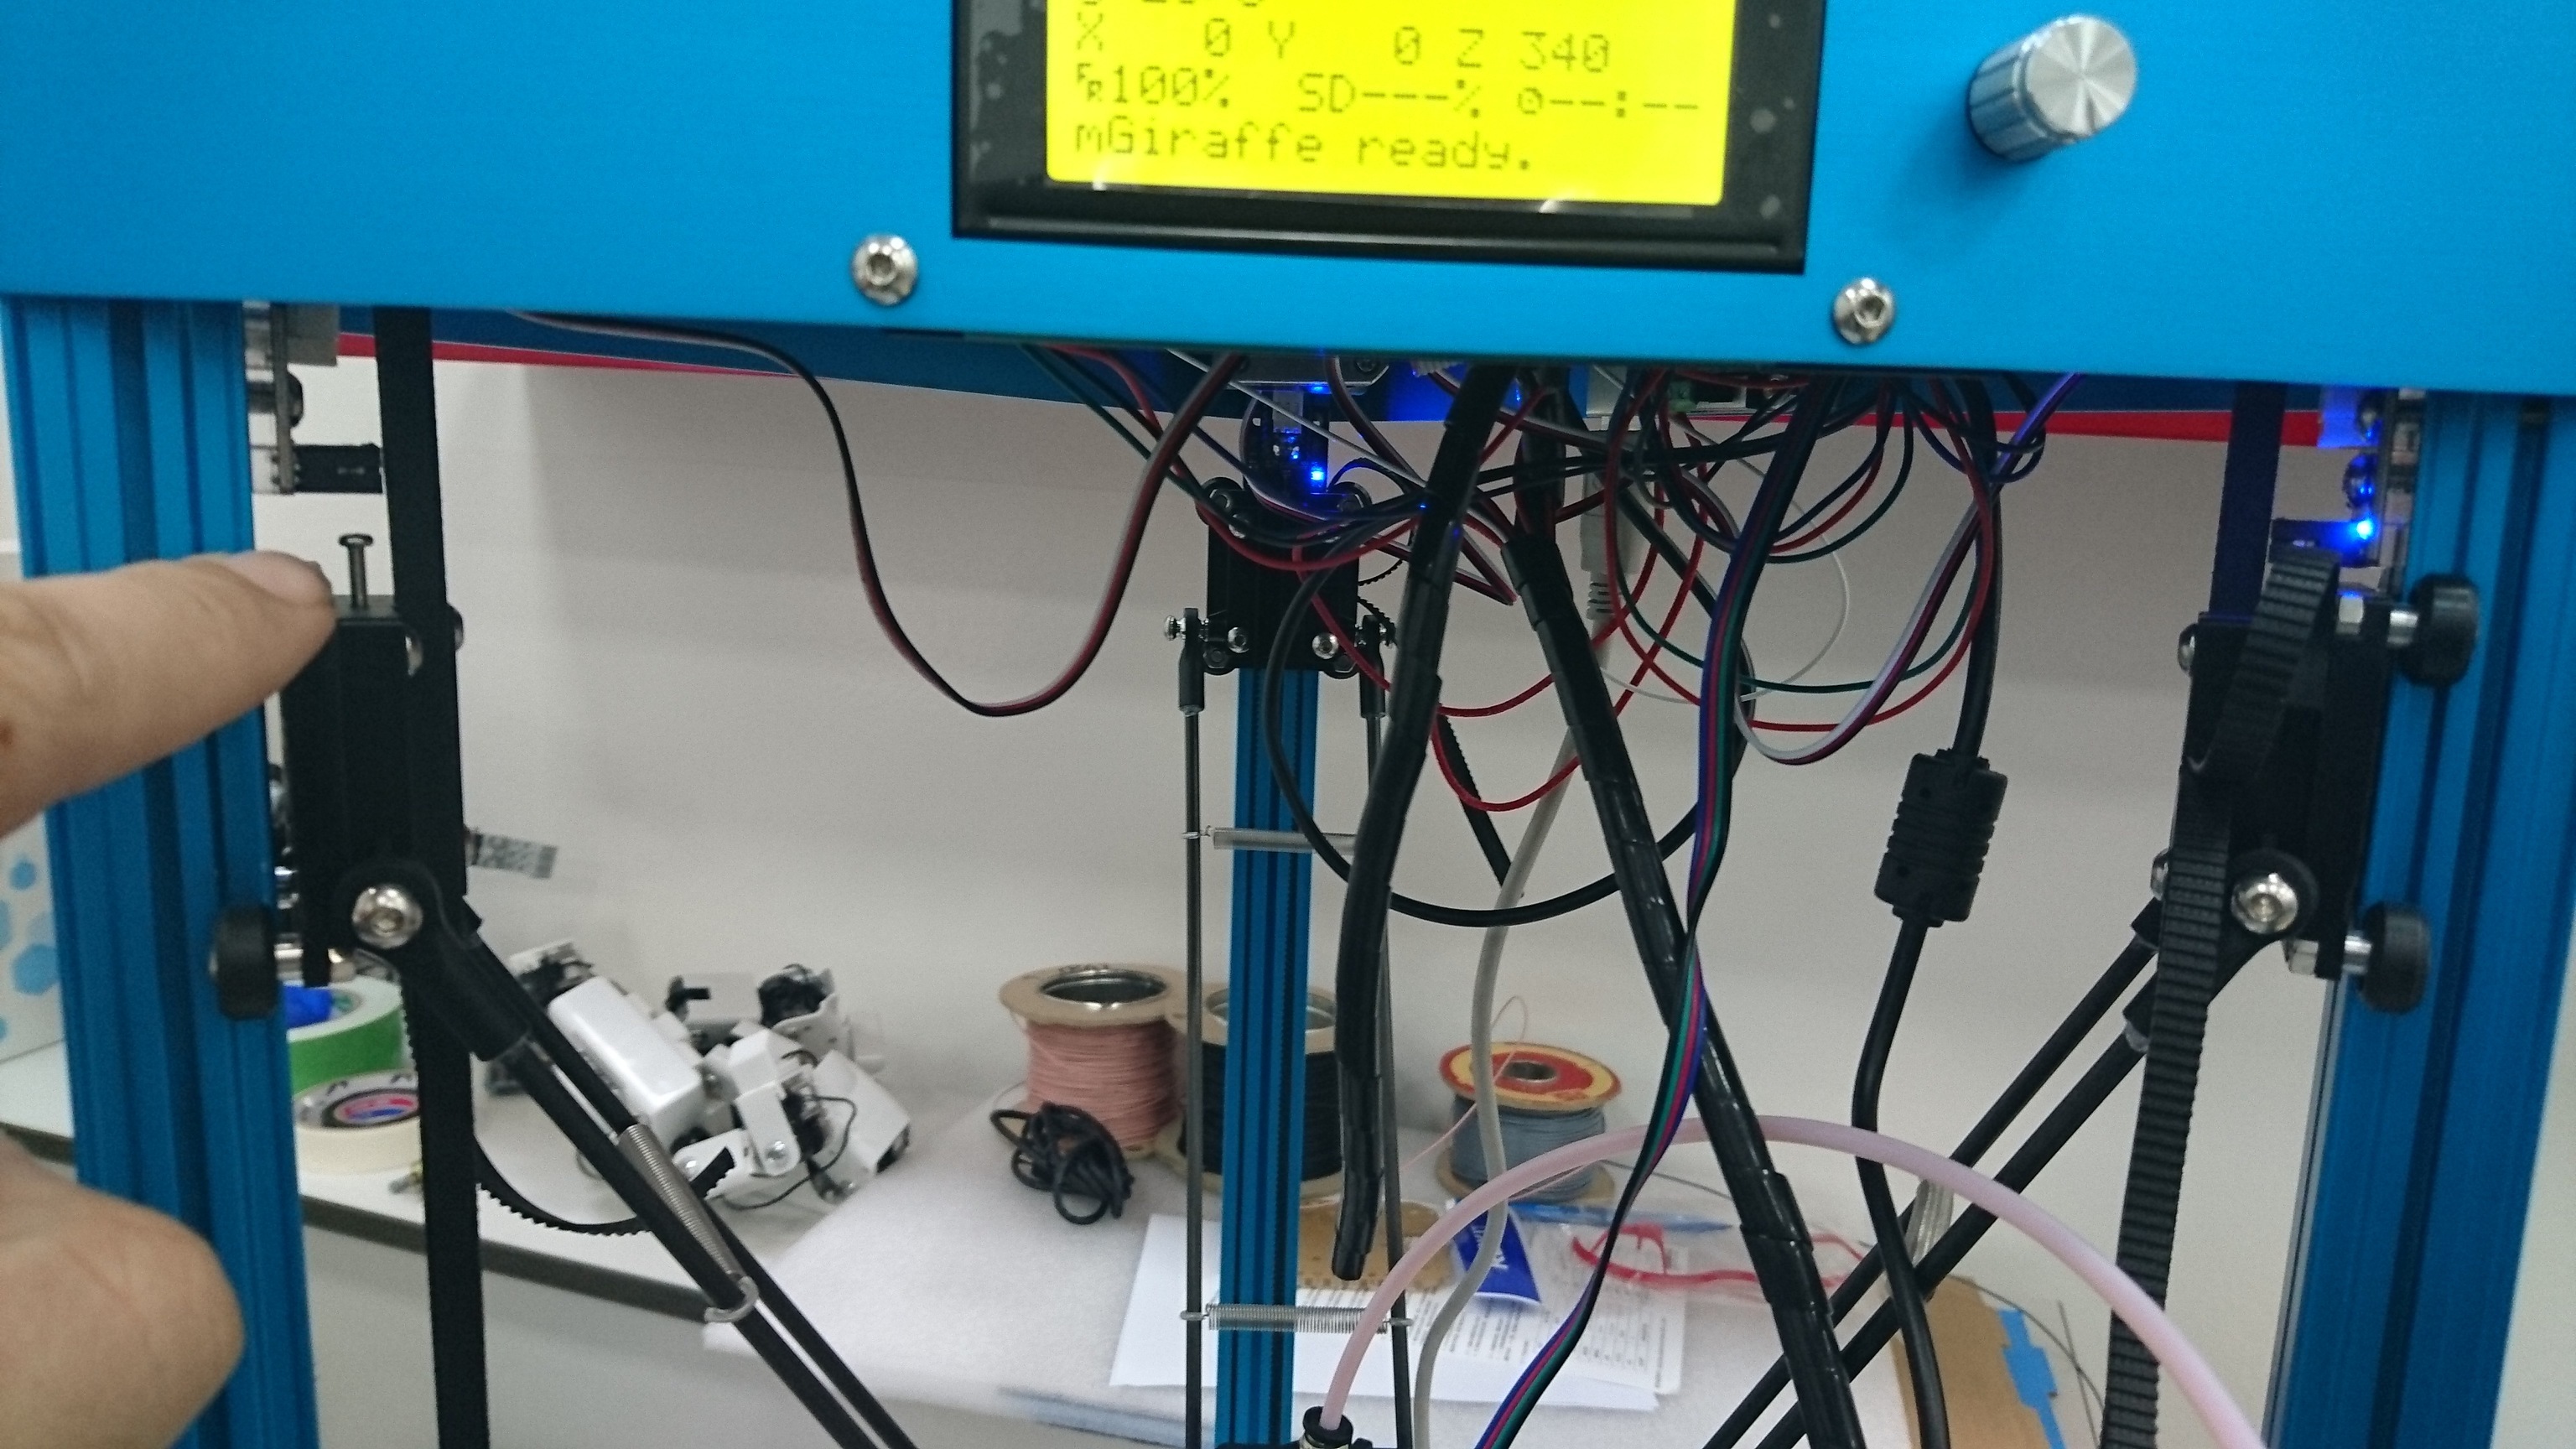 Mgiraffe debugging fualt - 3D Printer - Makeblock